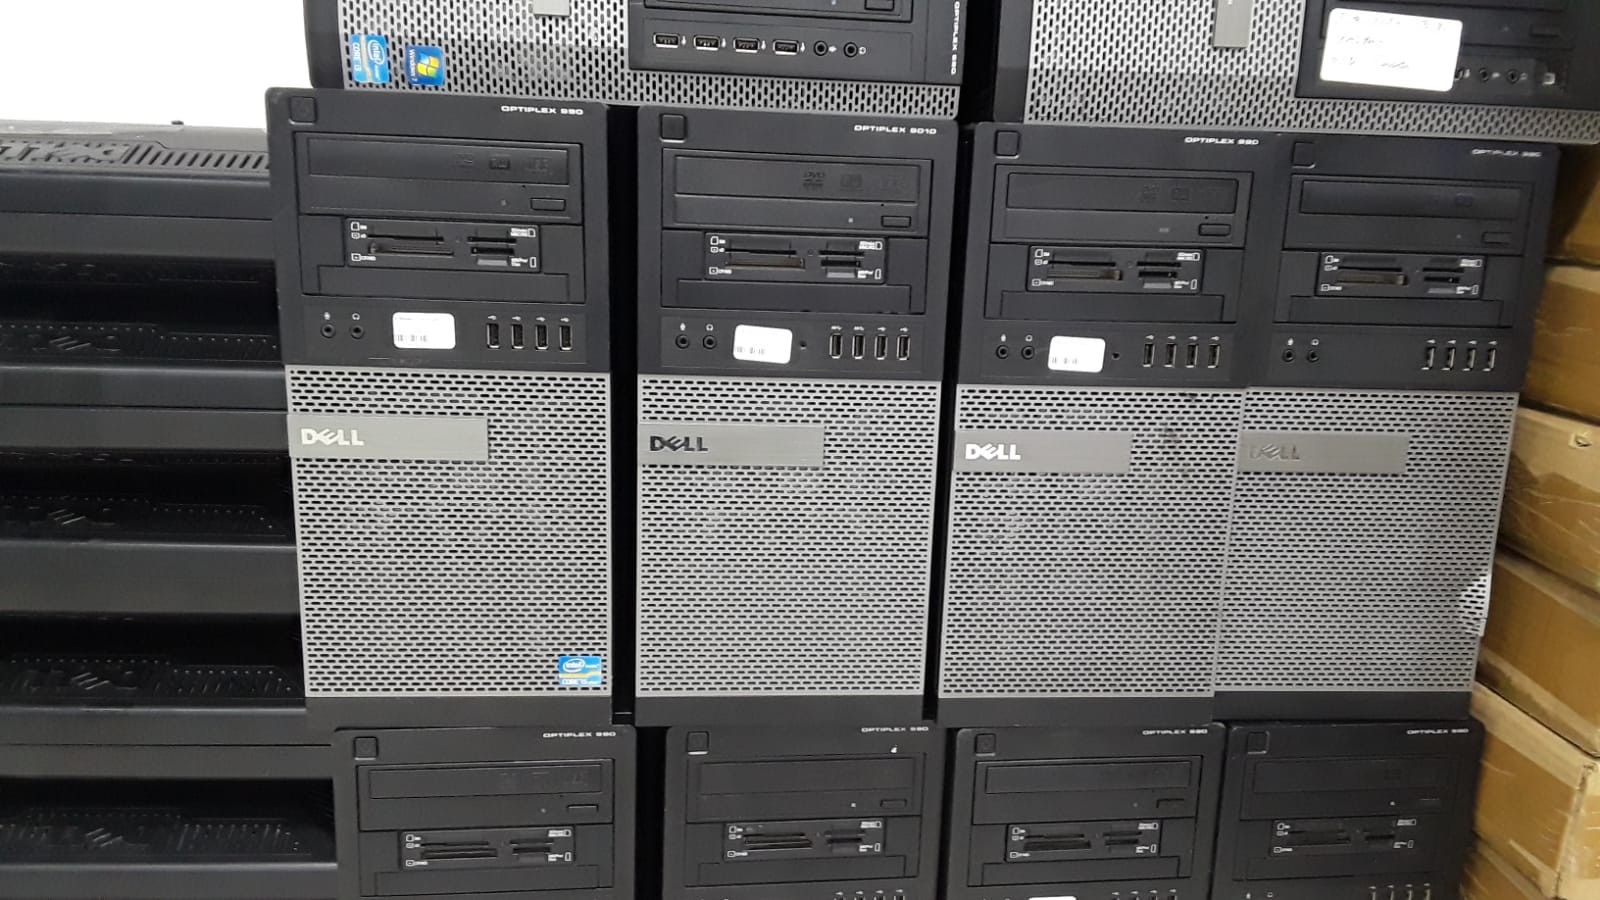 impresoras y scanners - Cpu Dell 990 Torre i5 2Th Generación 0